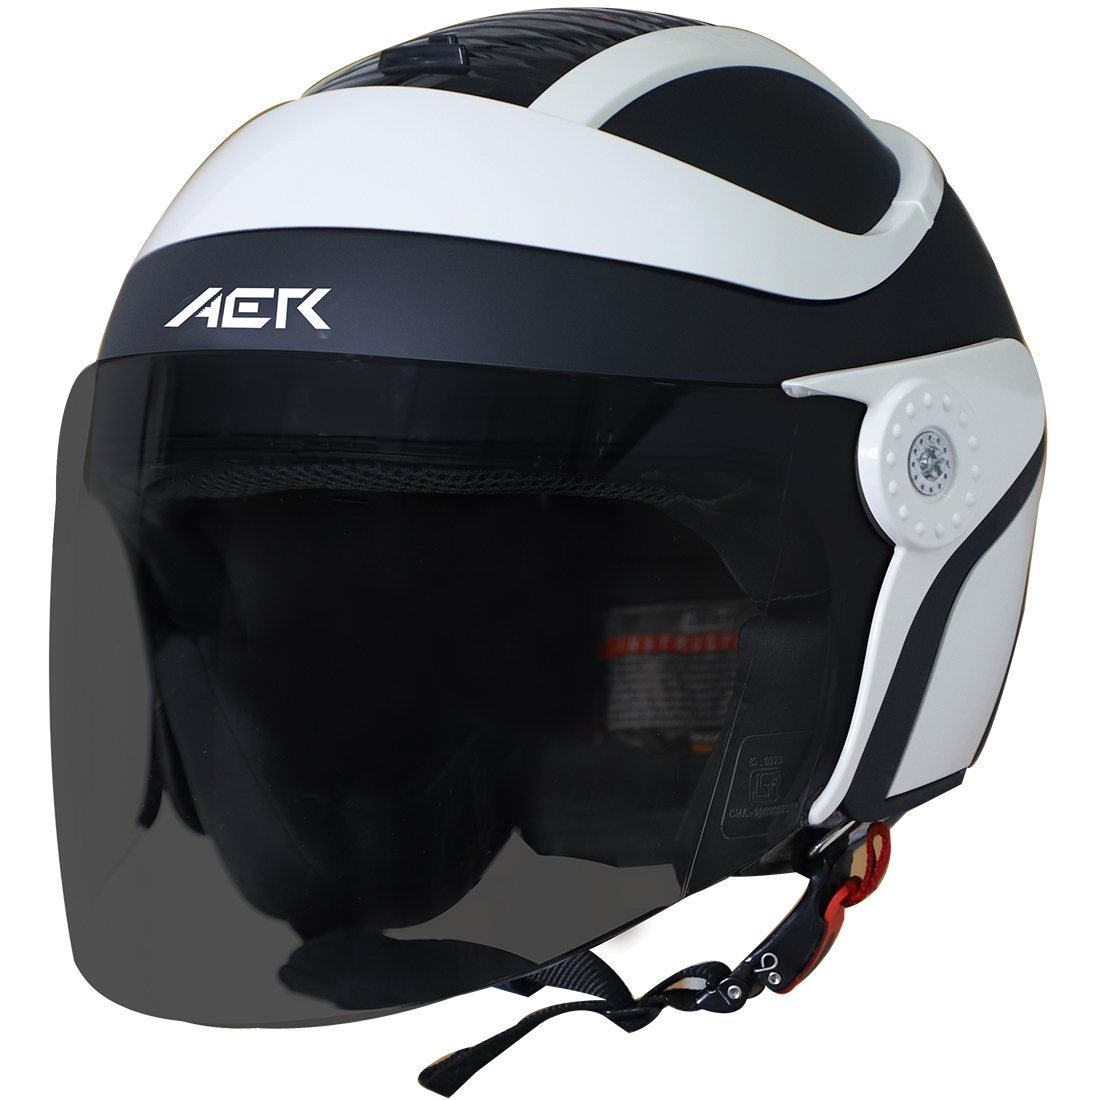 Steelbird SB-29 AER ISI Certified Helmet For Men And Women (Matt Black Off White With Smoke Visor)